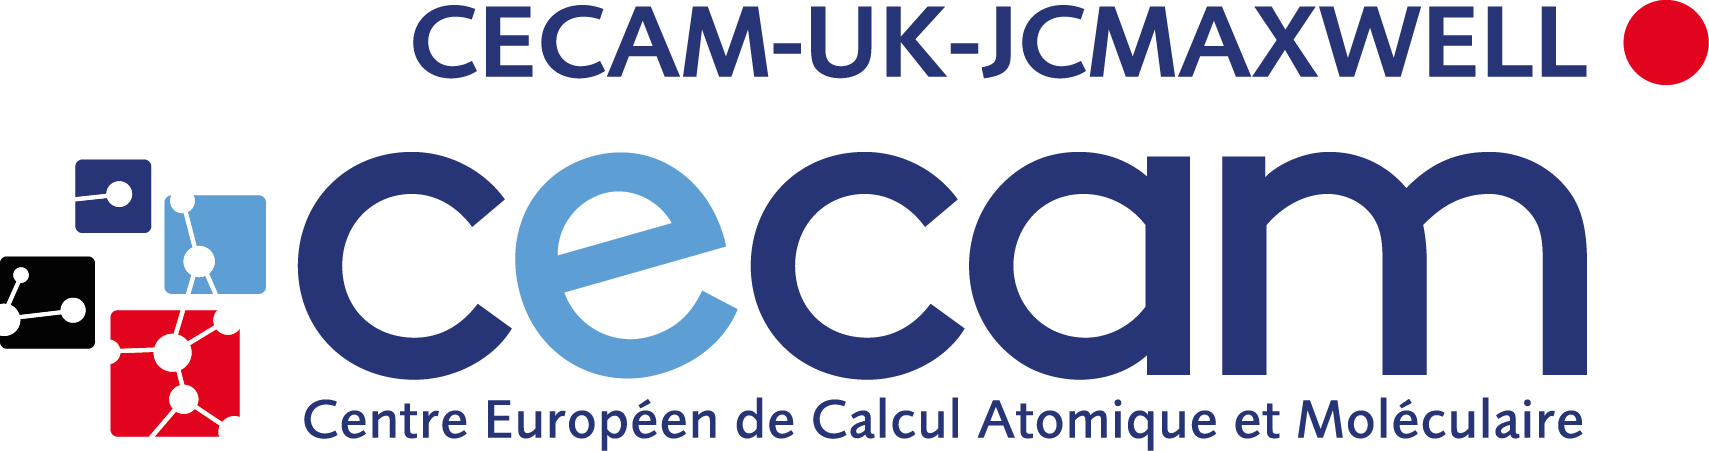 CECAM-UK-JCMAXWELL